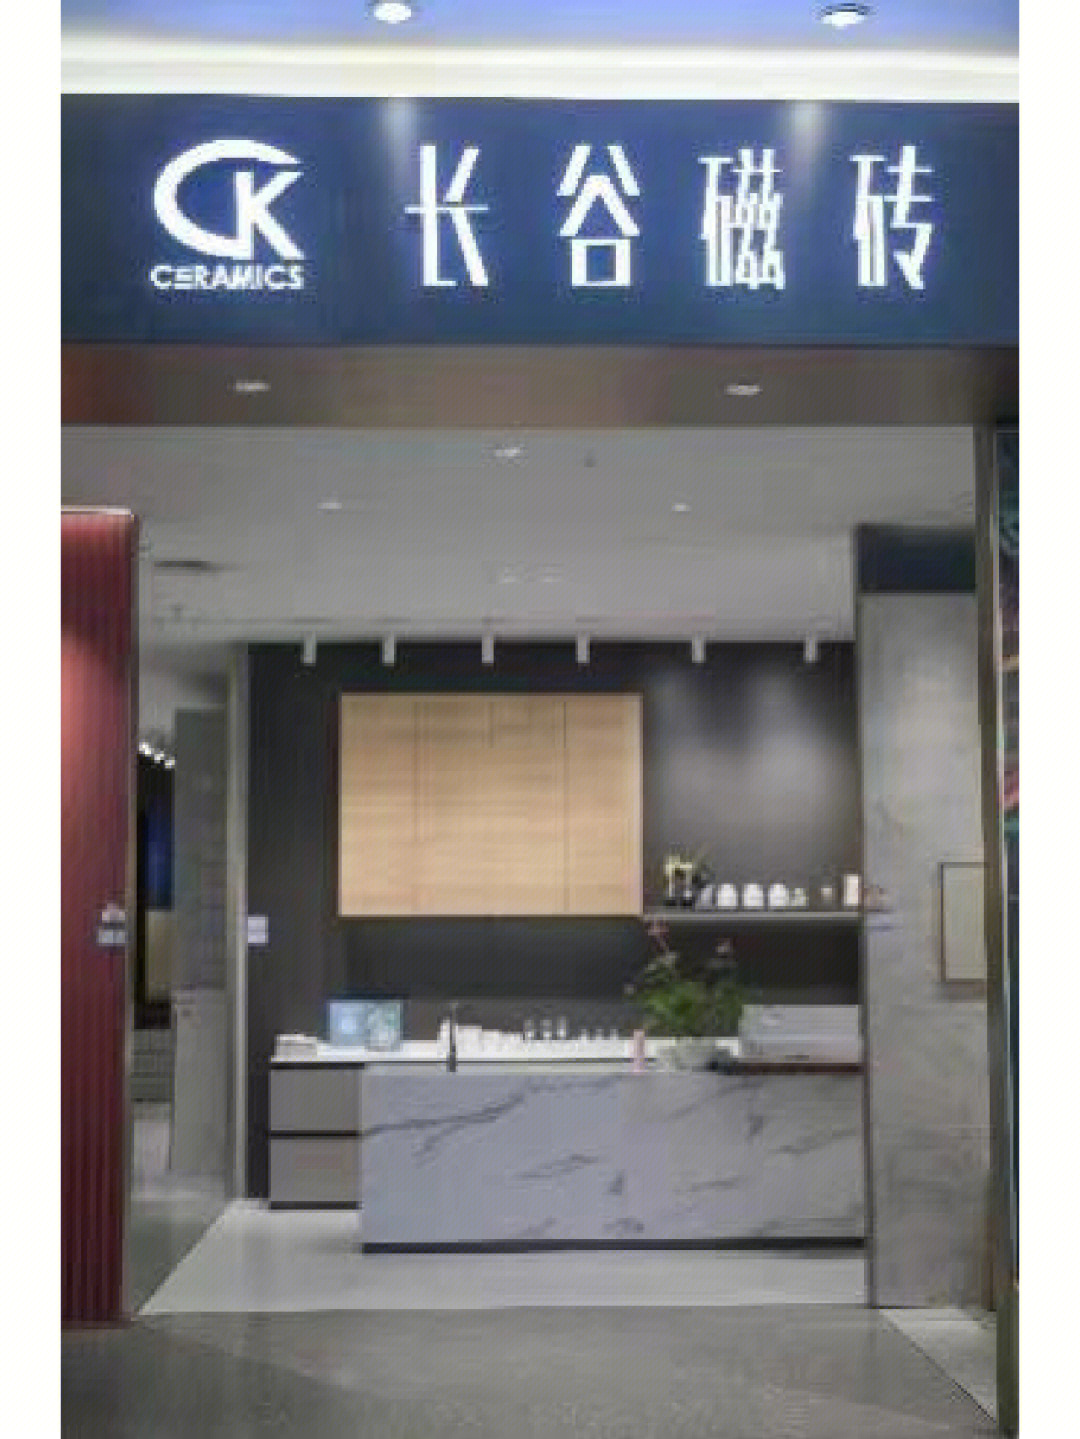 长谷瓷砖logo图片